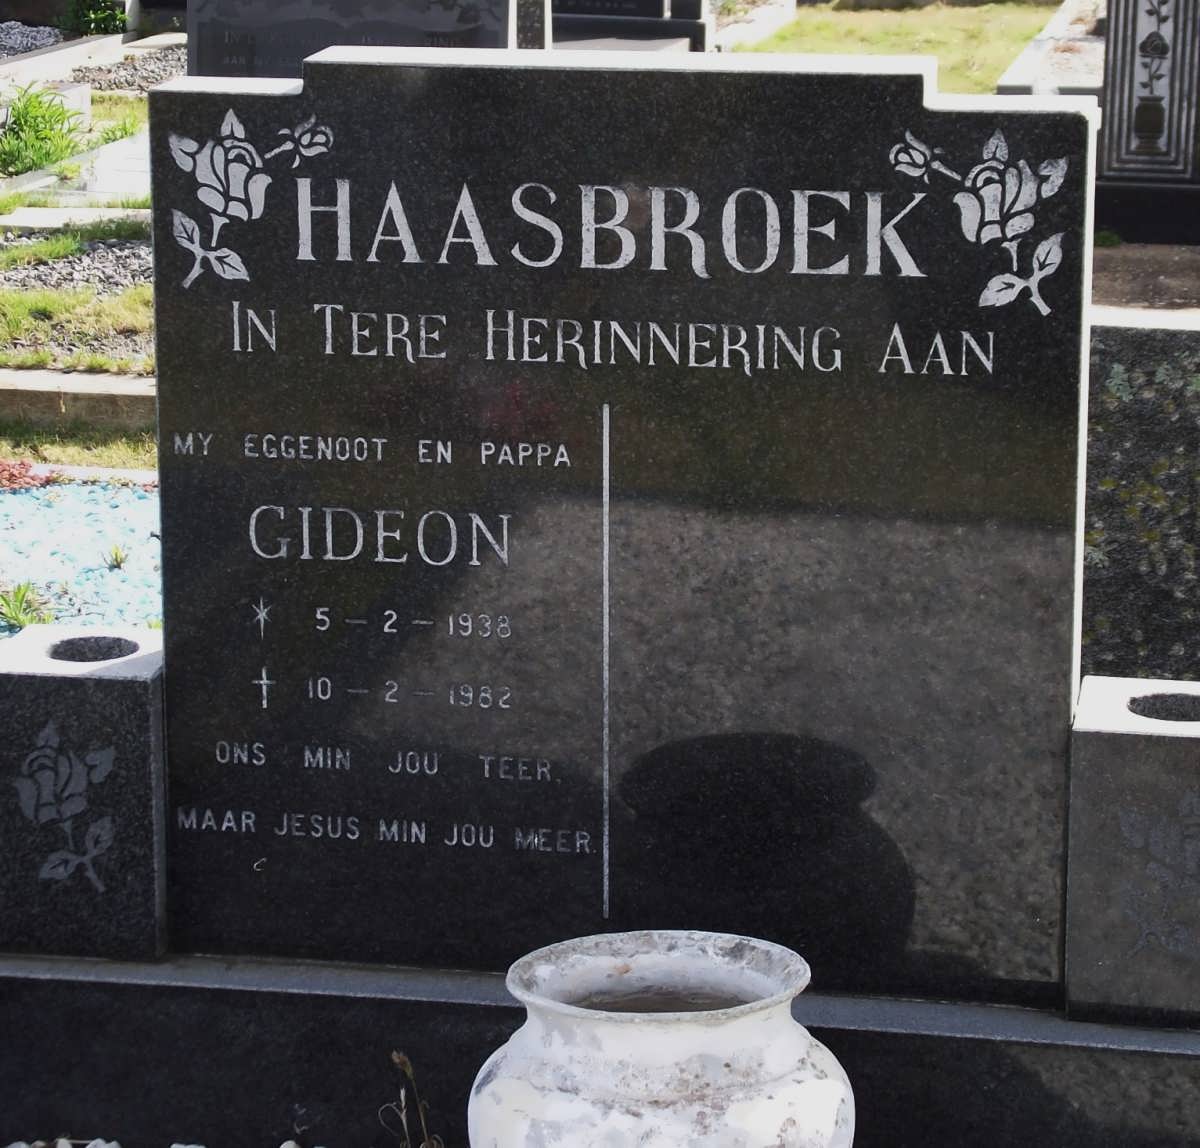 HAASBROEK Gideon 1938-1982